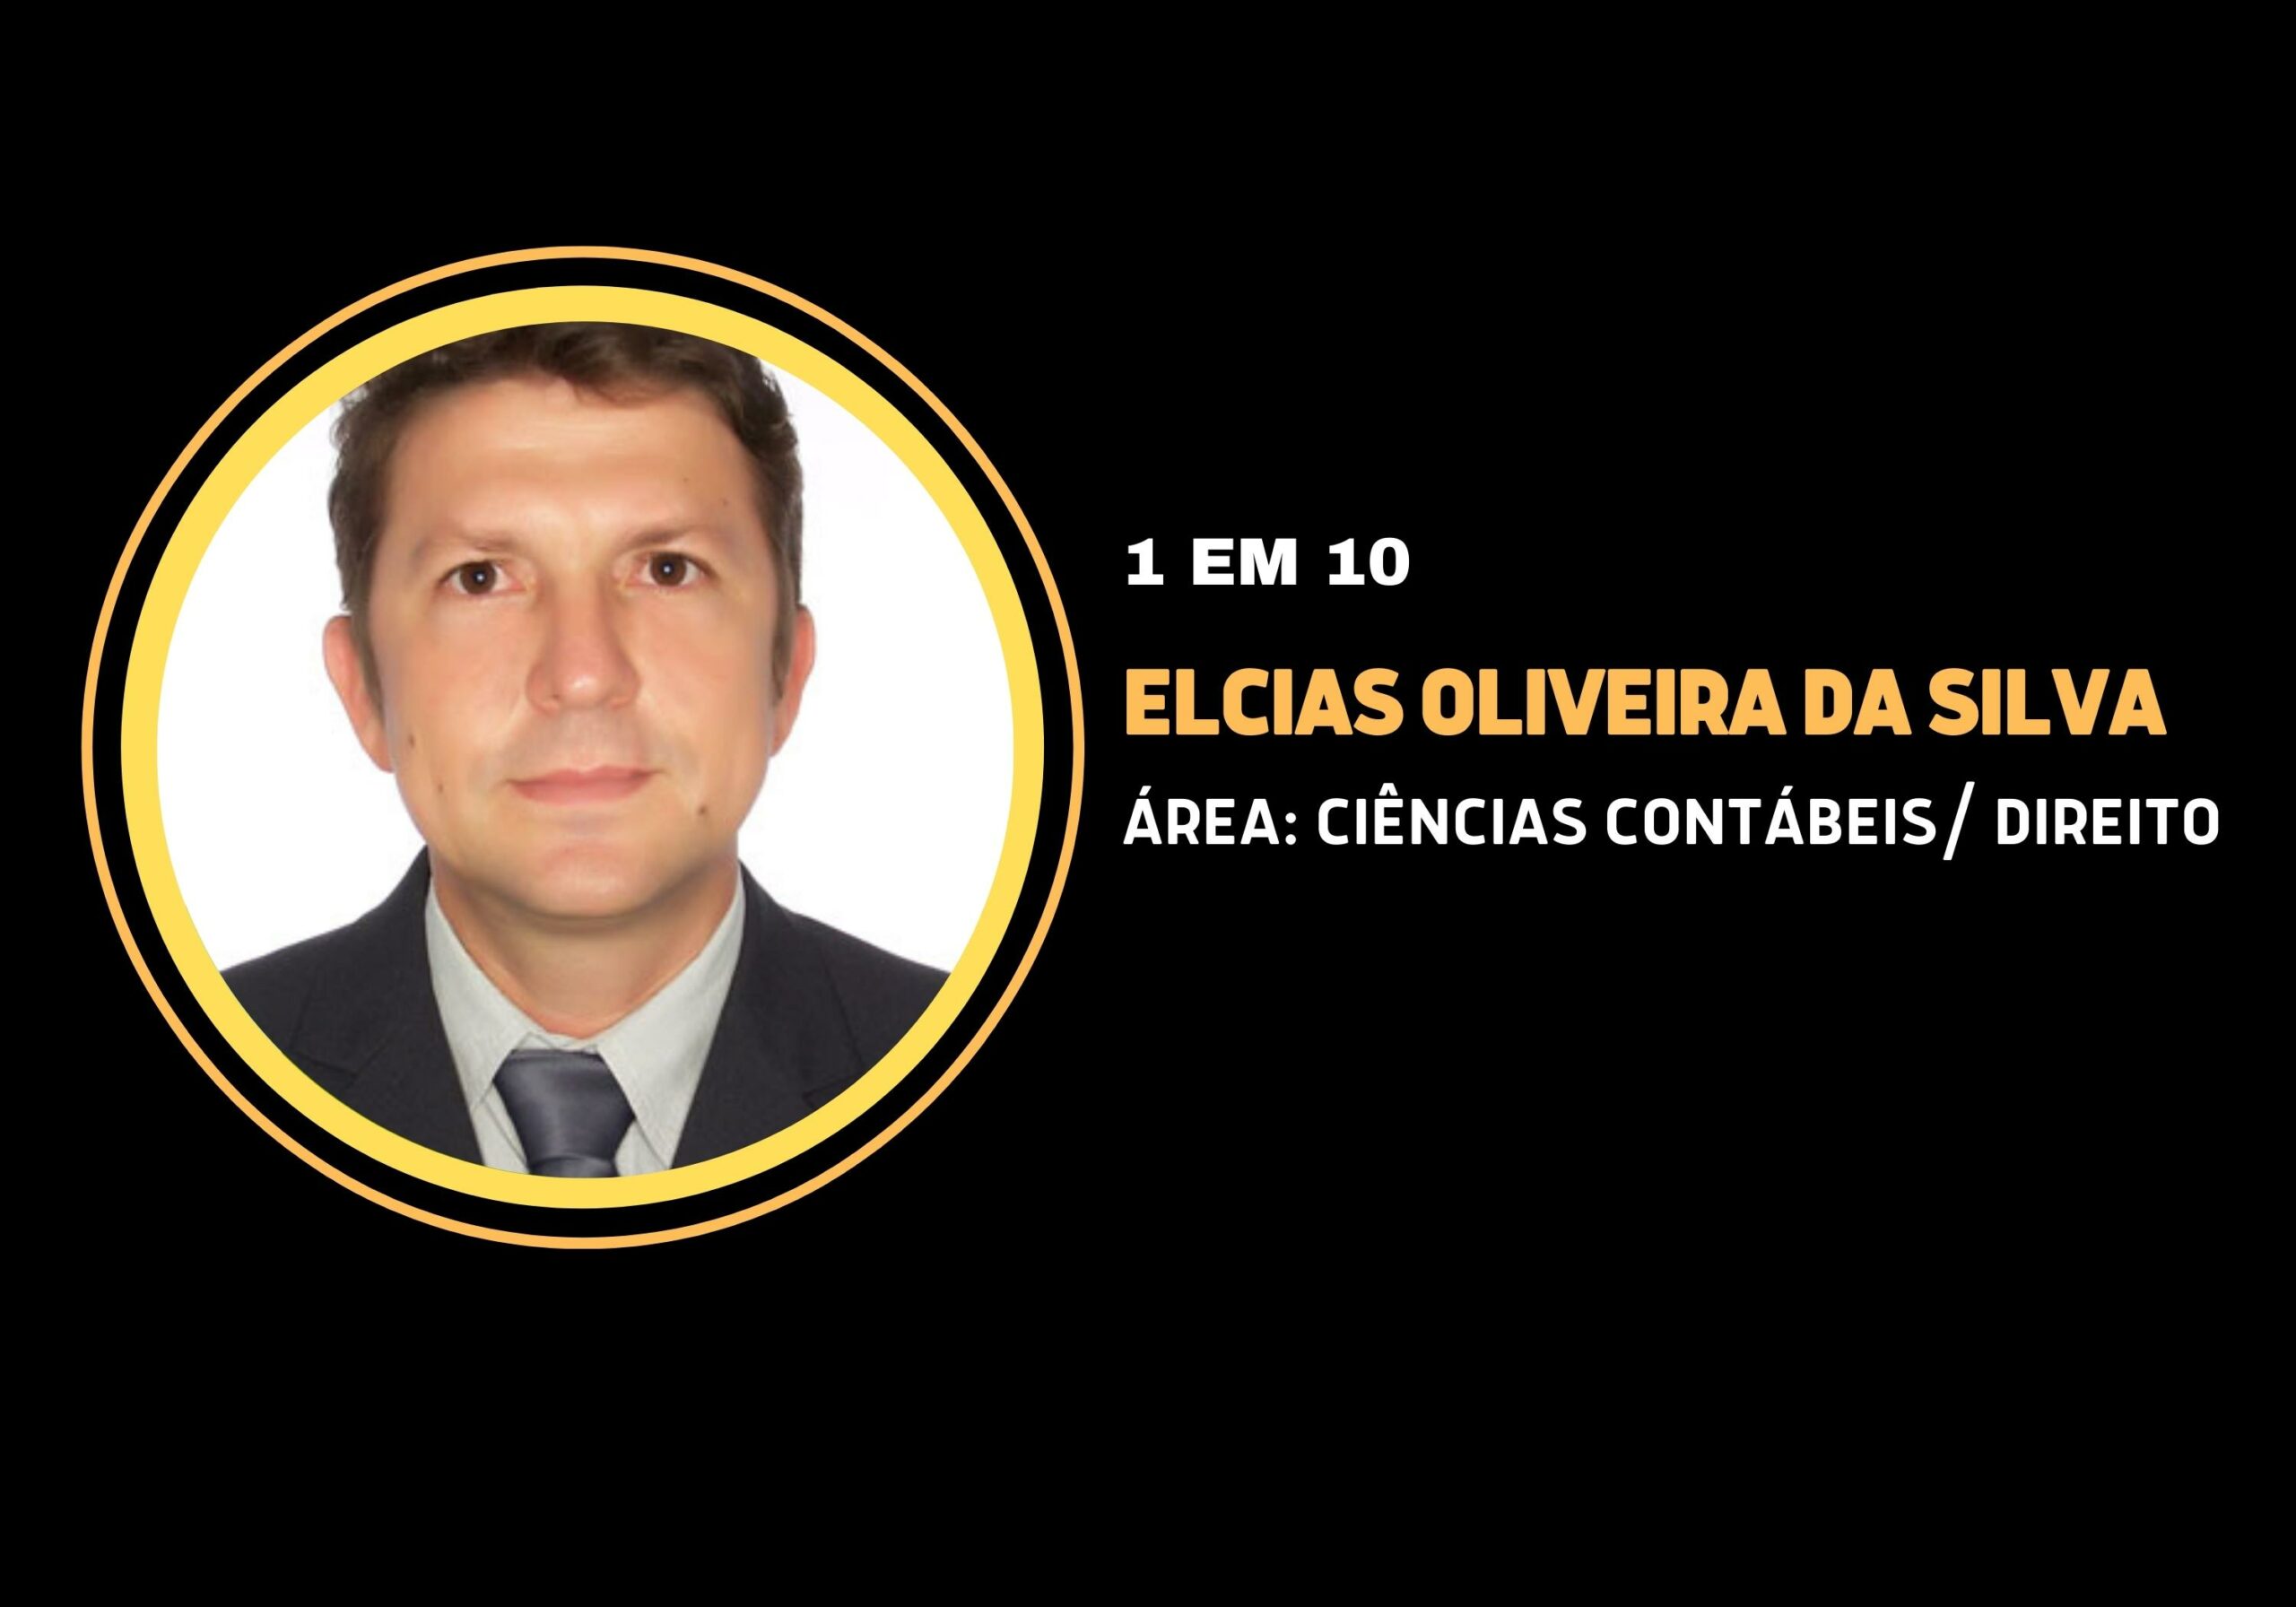 Elcias Oliveira da Silva | 1 em 10